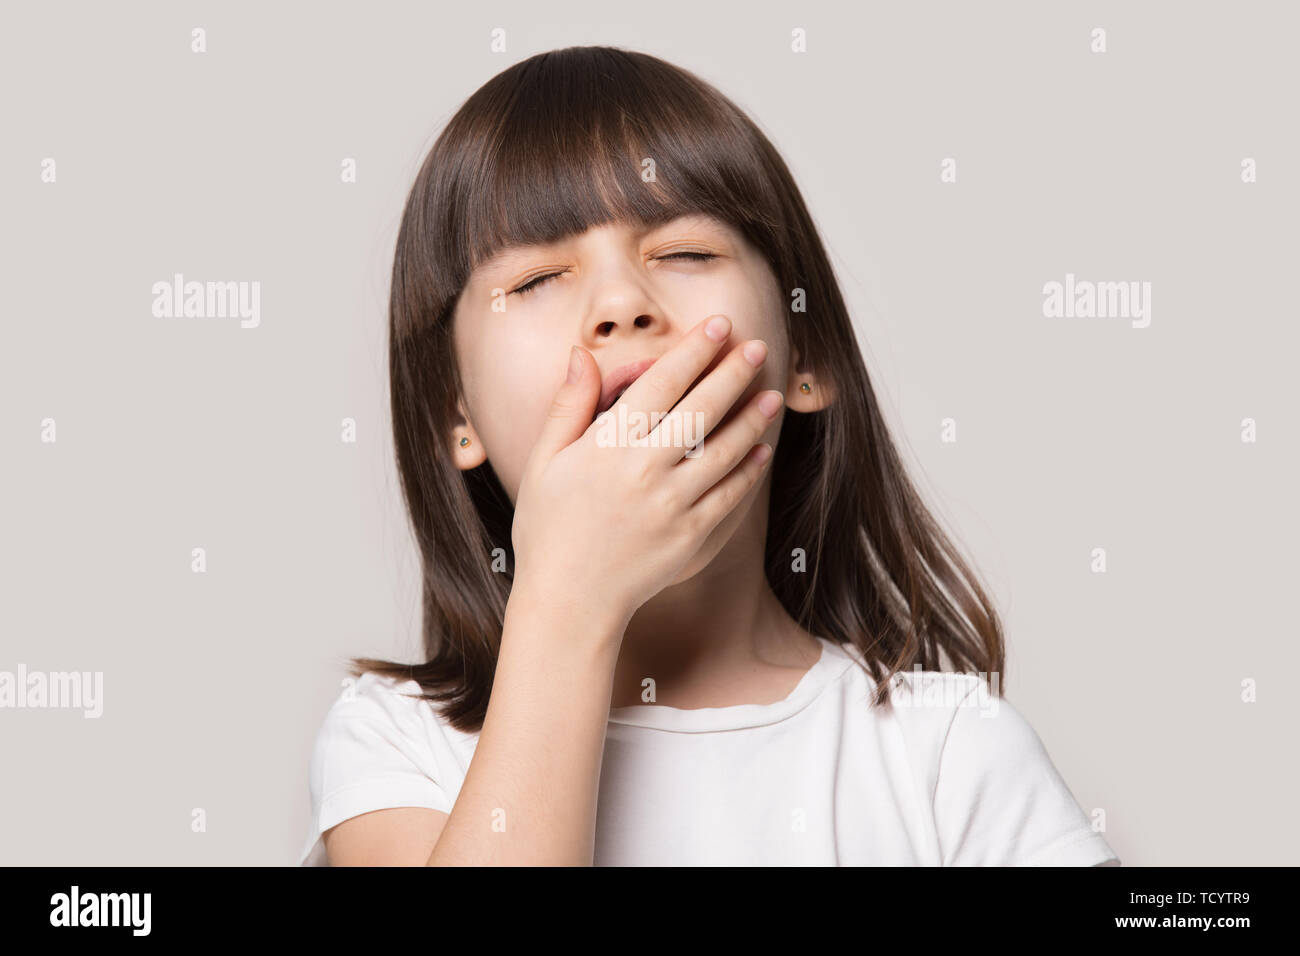 Little girl yawning feels sleepy isolated on beige studio background Stock Photo